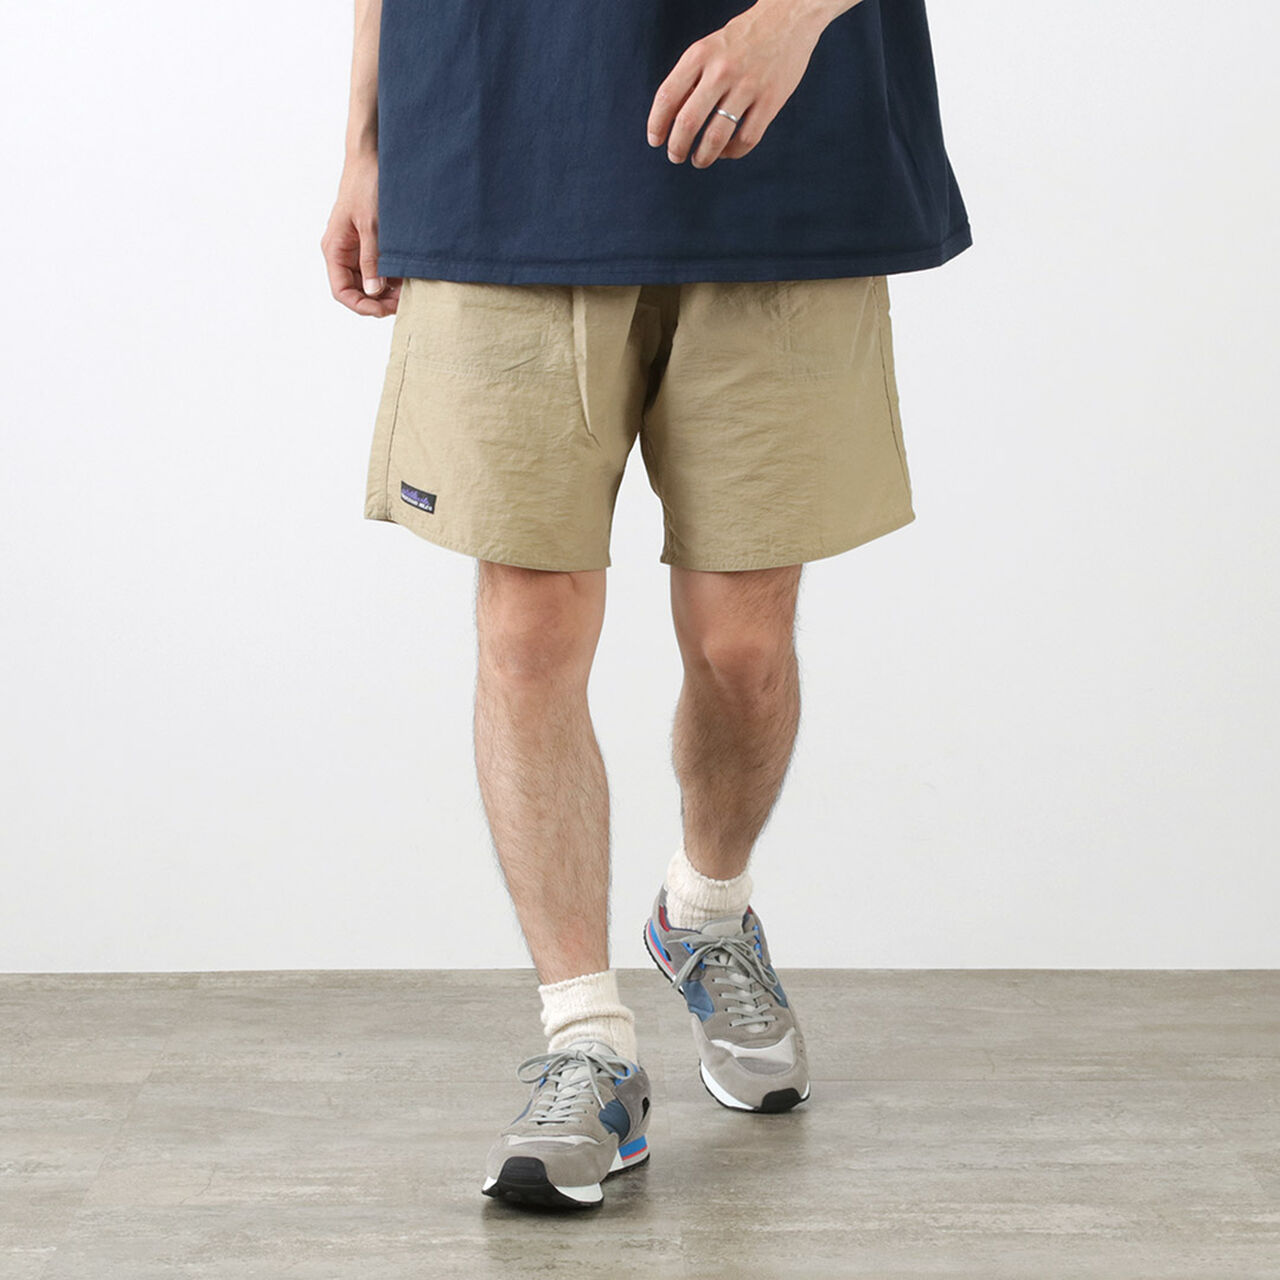 Imperial Trunk Shorts,Khaki, large image number 0